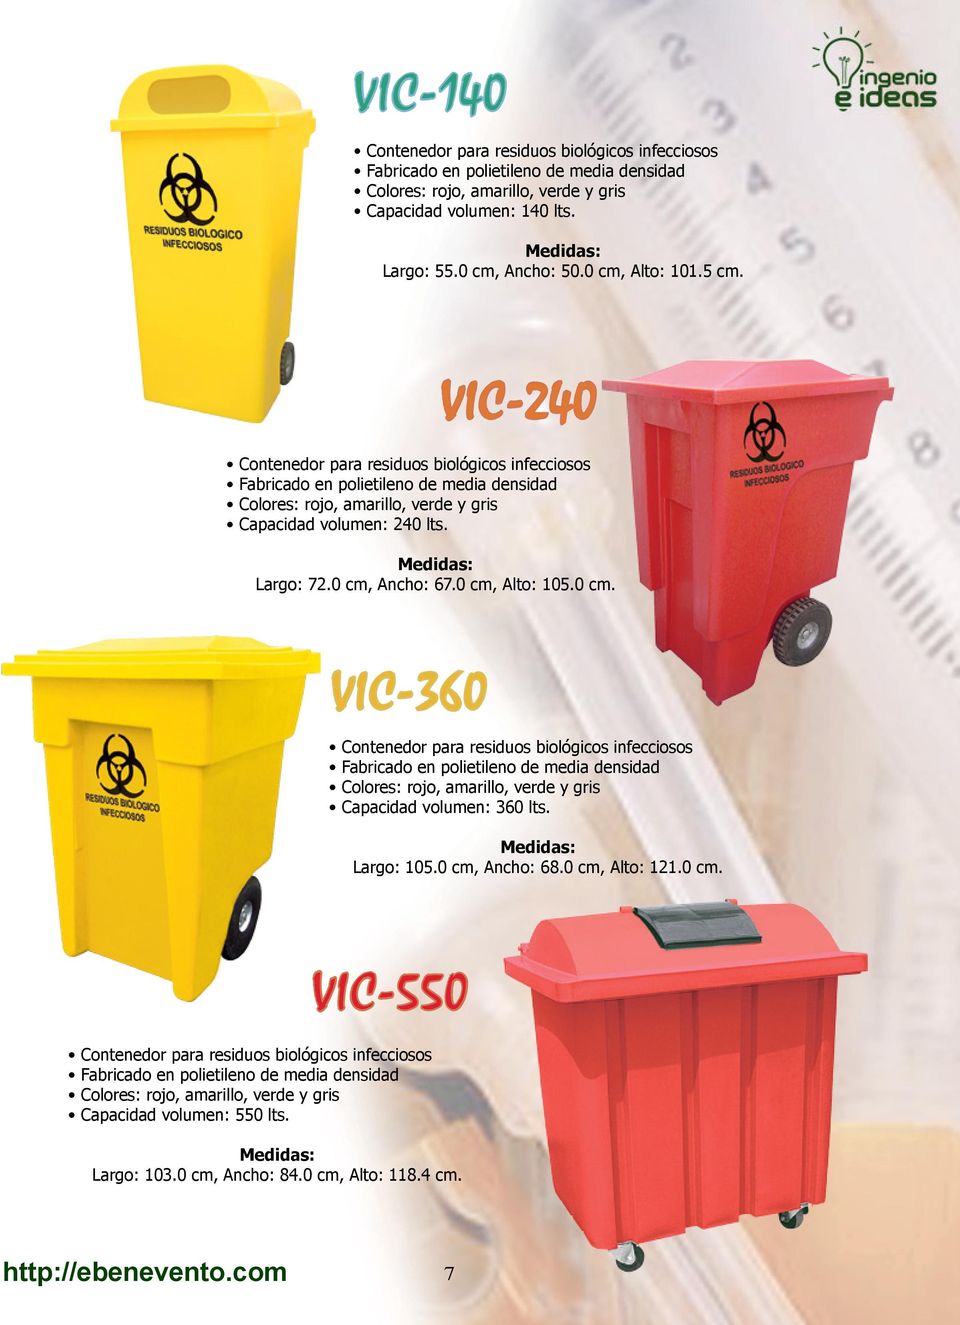 Ancho: 67.0 cm, Alto: 105.0 cm. VIC-360 Contenedor para residuos biológicos infecciosos Colores: rojo, amarillo, verde y gris Capacidad volumen: 360 lts. Largo: 105.